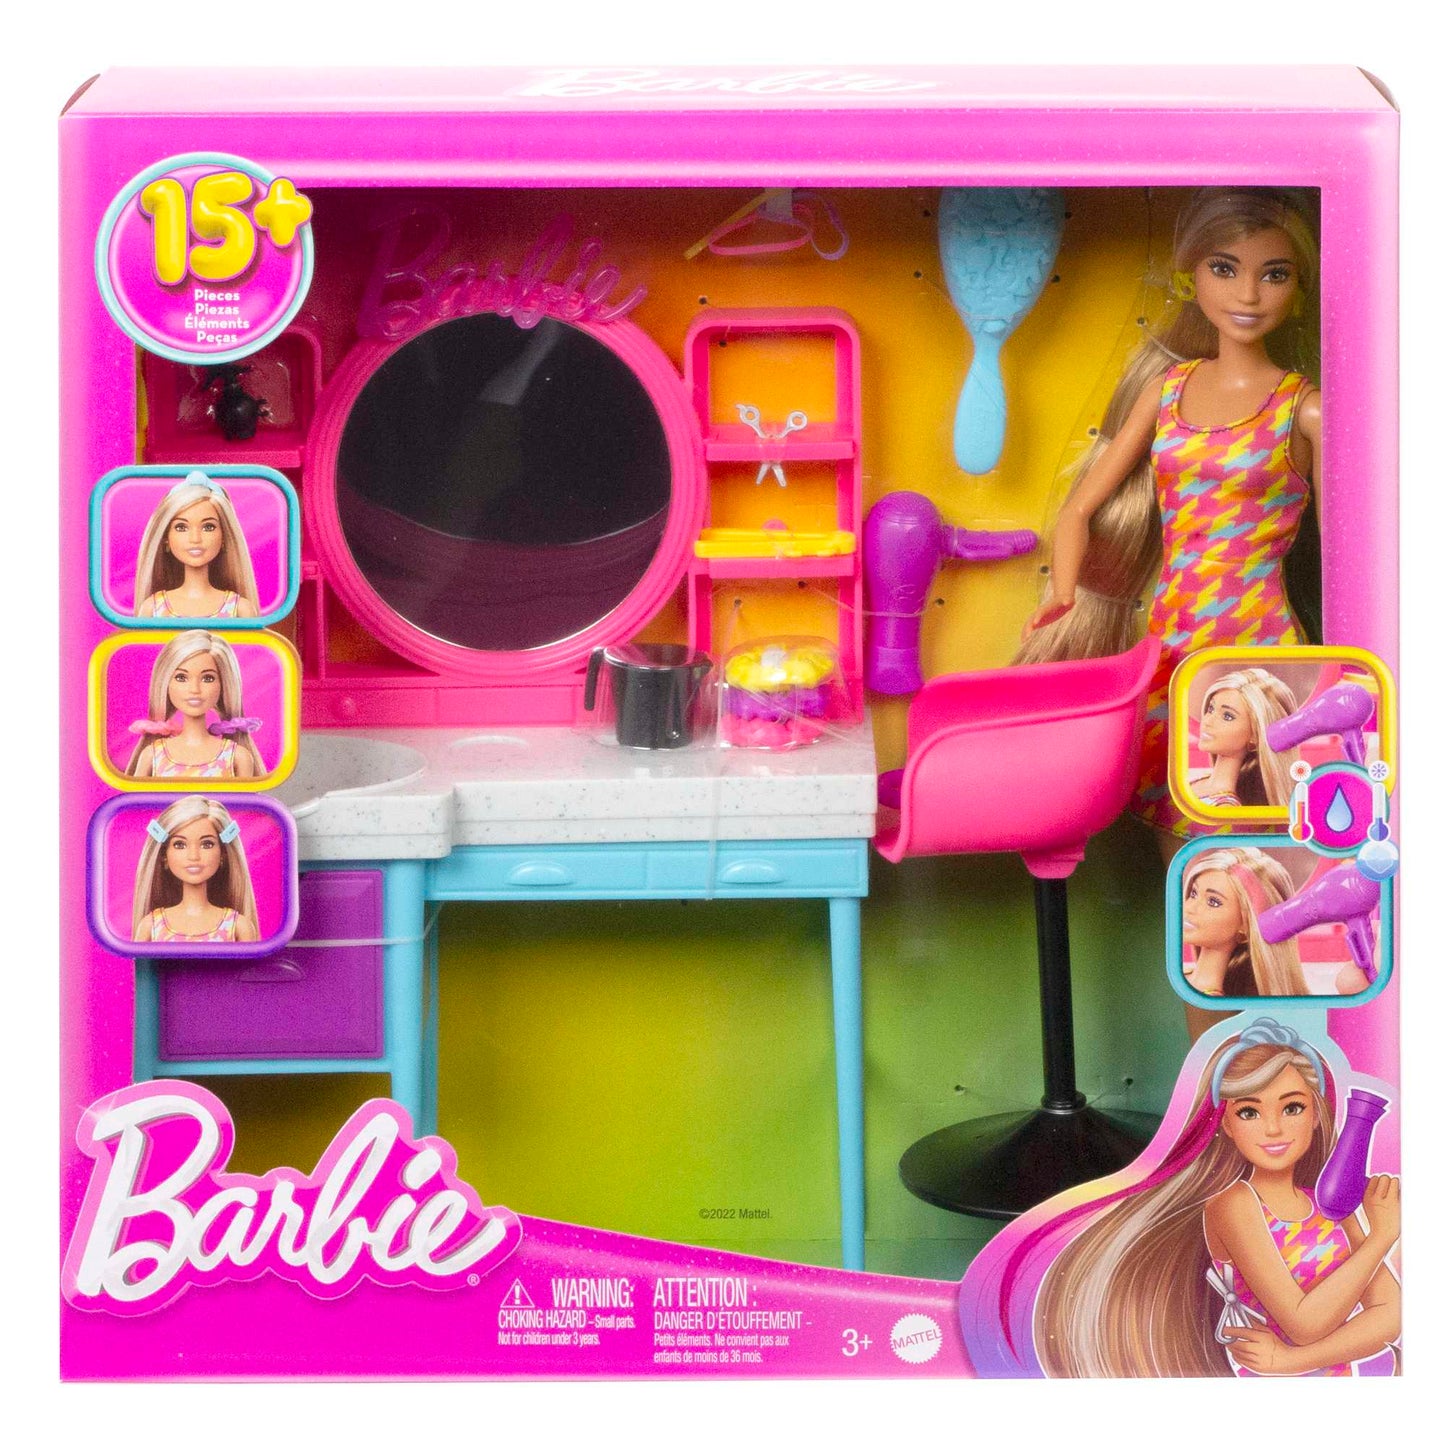 Barbie - Doll and Hair Salon Playset